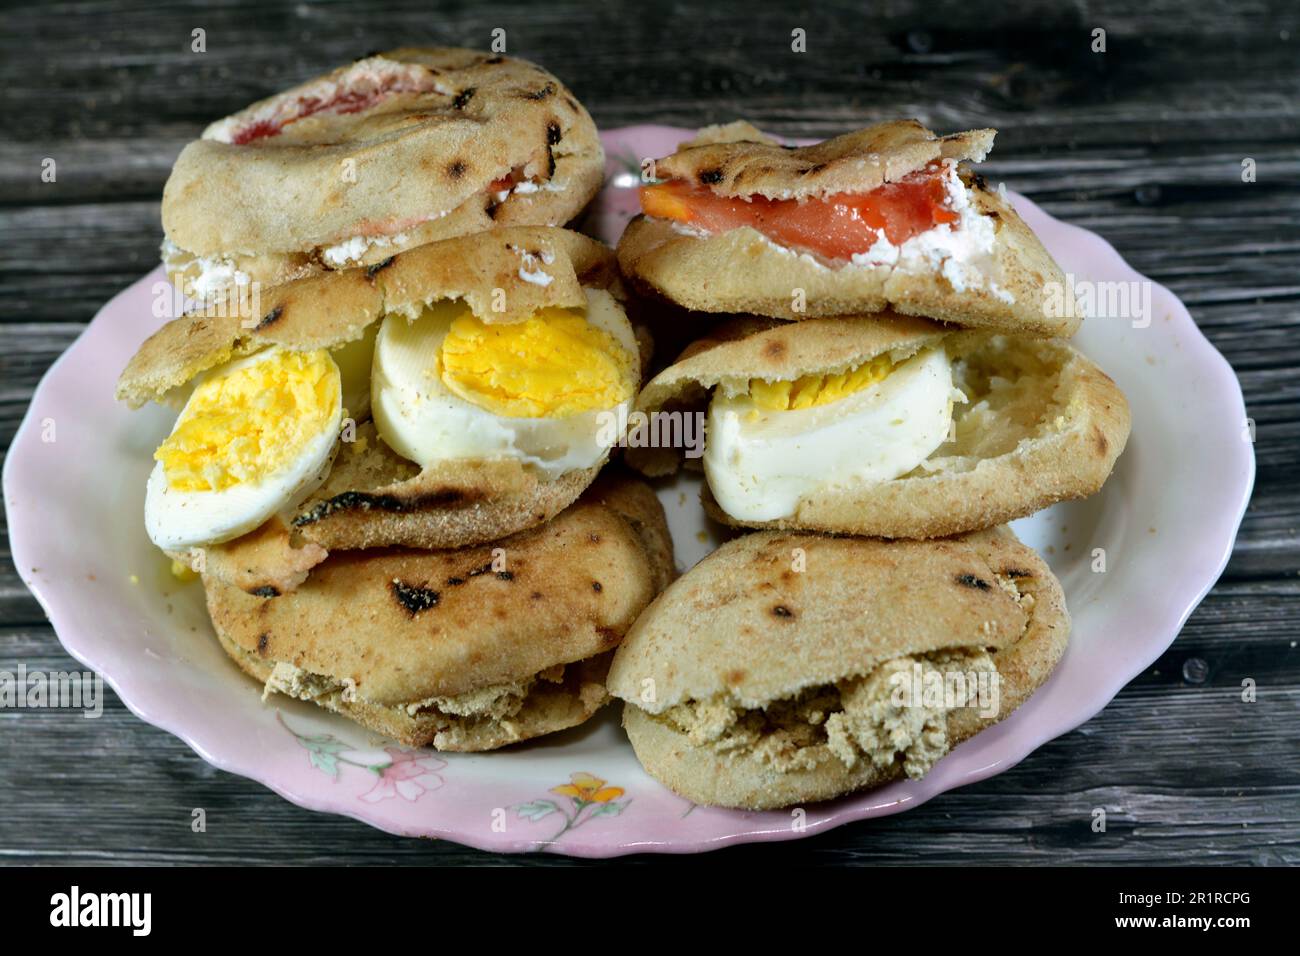 Une assiette de sandwiches au fromage blanc Feta avec des tranches de tomates, de la tahini halva traditionnelle ou Halawa Tahiniya et des tranches d'œufs durs insi Banque D'Images